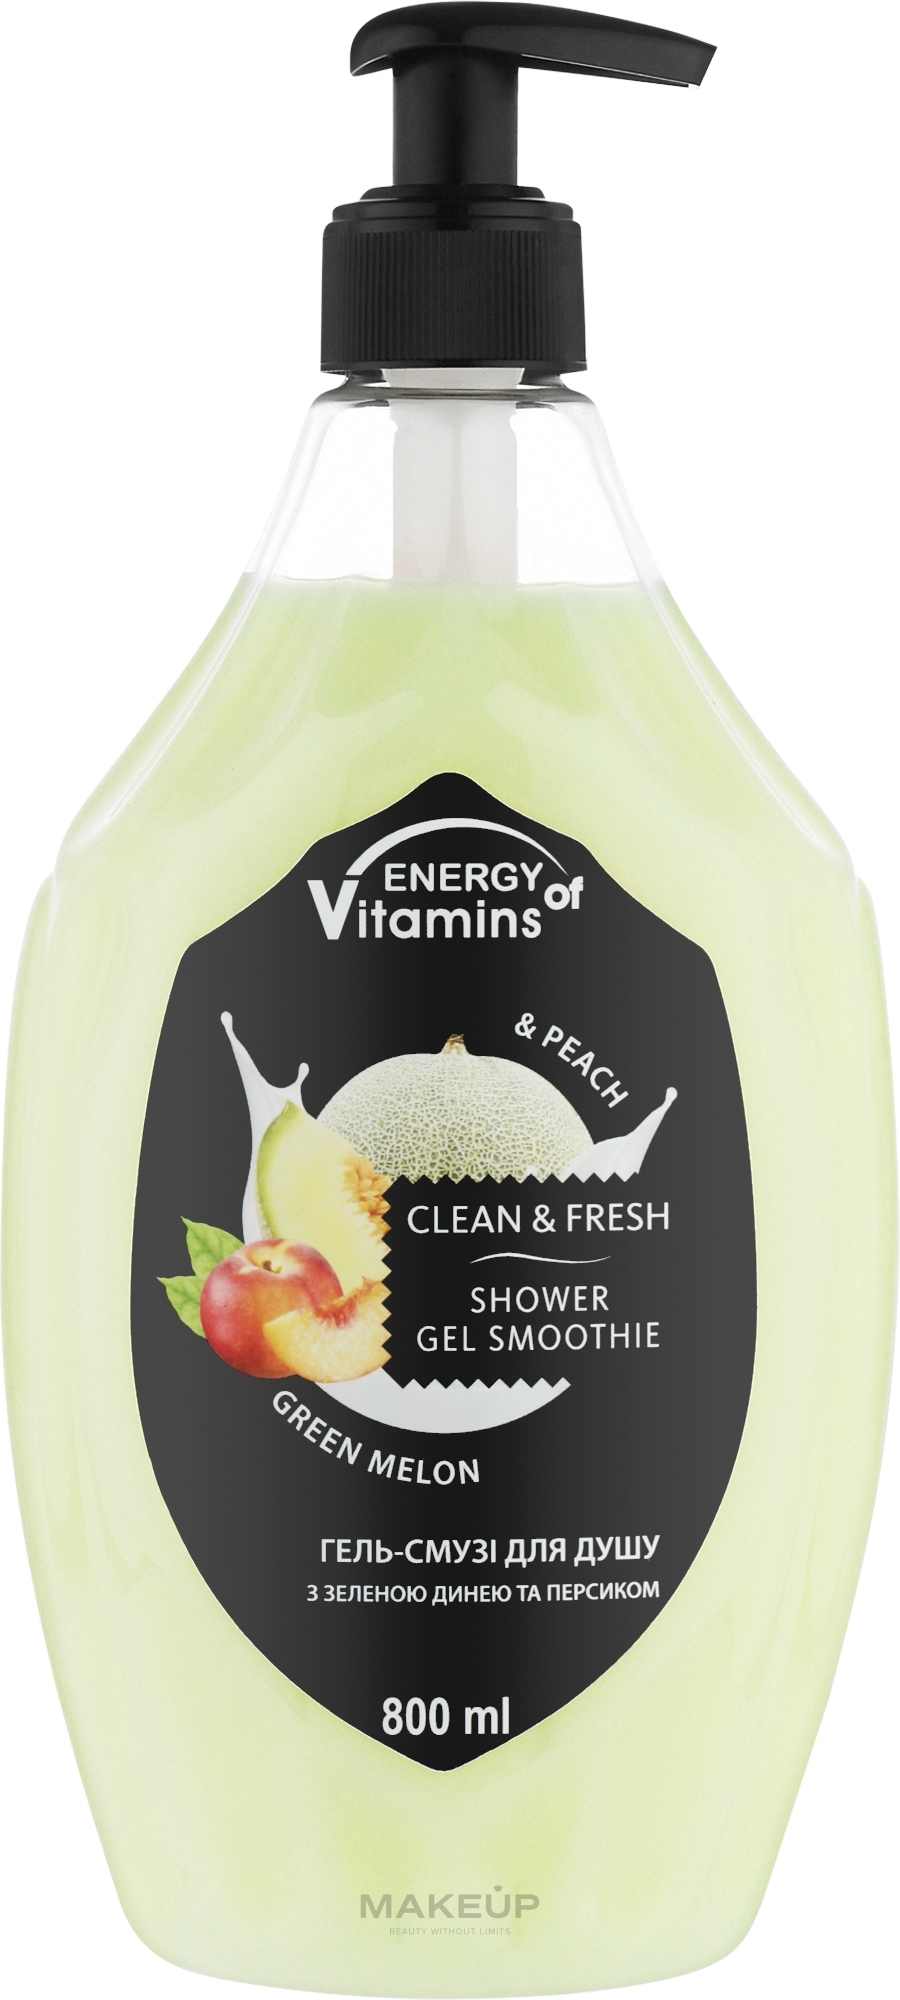 Гель-смузі для душу "Green Melon & Peach" - Energy of Vitamins Clean&Fresh Shower Gel Smoothie — фото 800ml